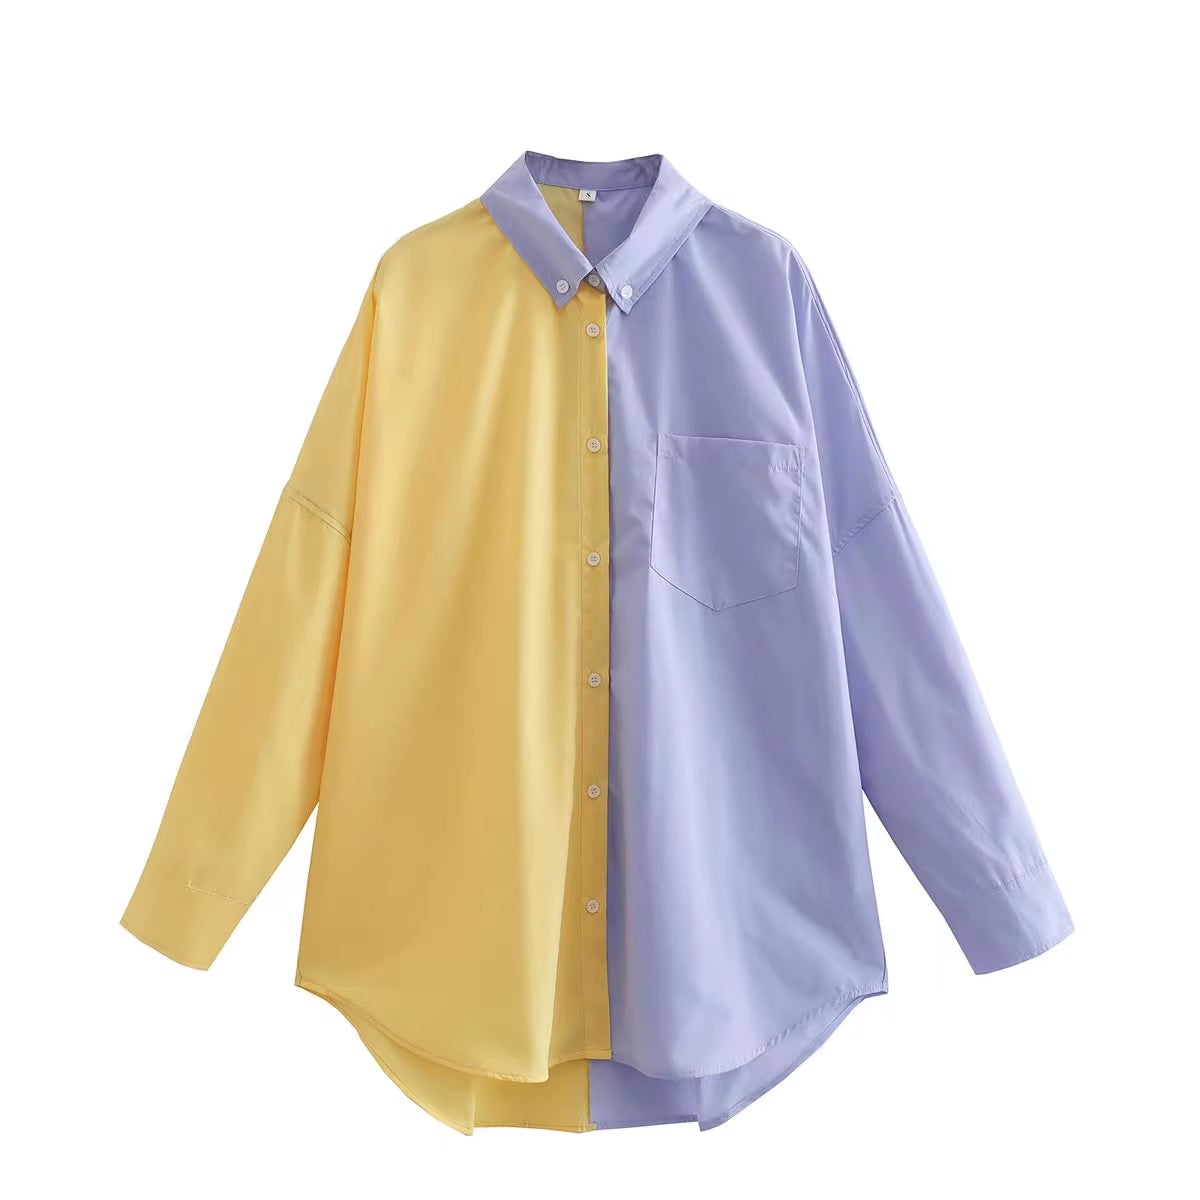 Дамска риза 2 Colors 24'-Изпъкнете със стил с нашата дамска риза с контрастни цветове. Изработена от мека и дишаща материя, тази риза внася поп цвят във всяко облекло. Идеален за непринуден ден навън или нощ в града.-Thedresscode